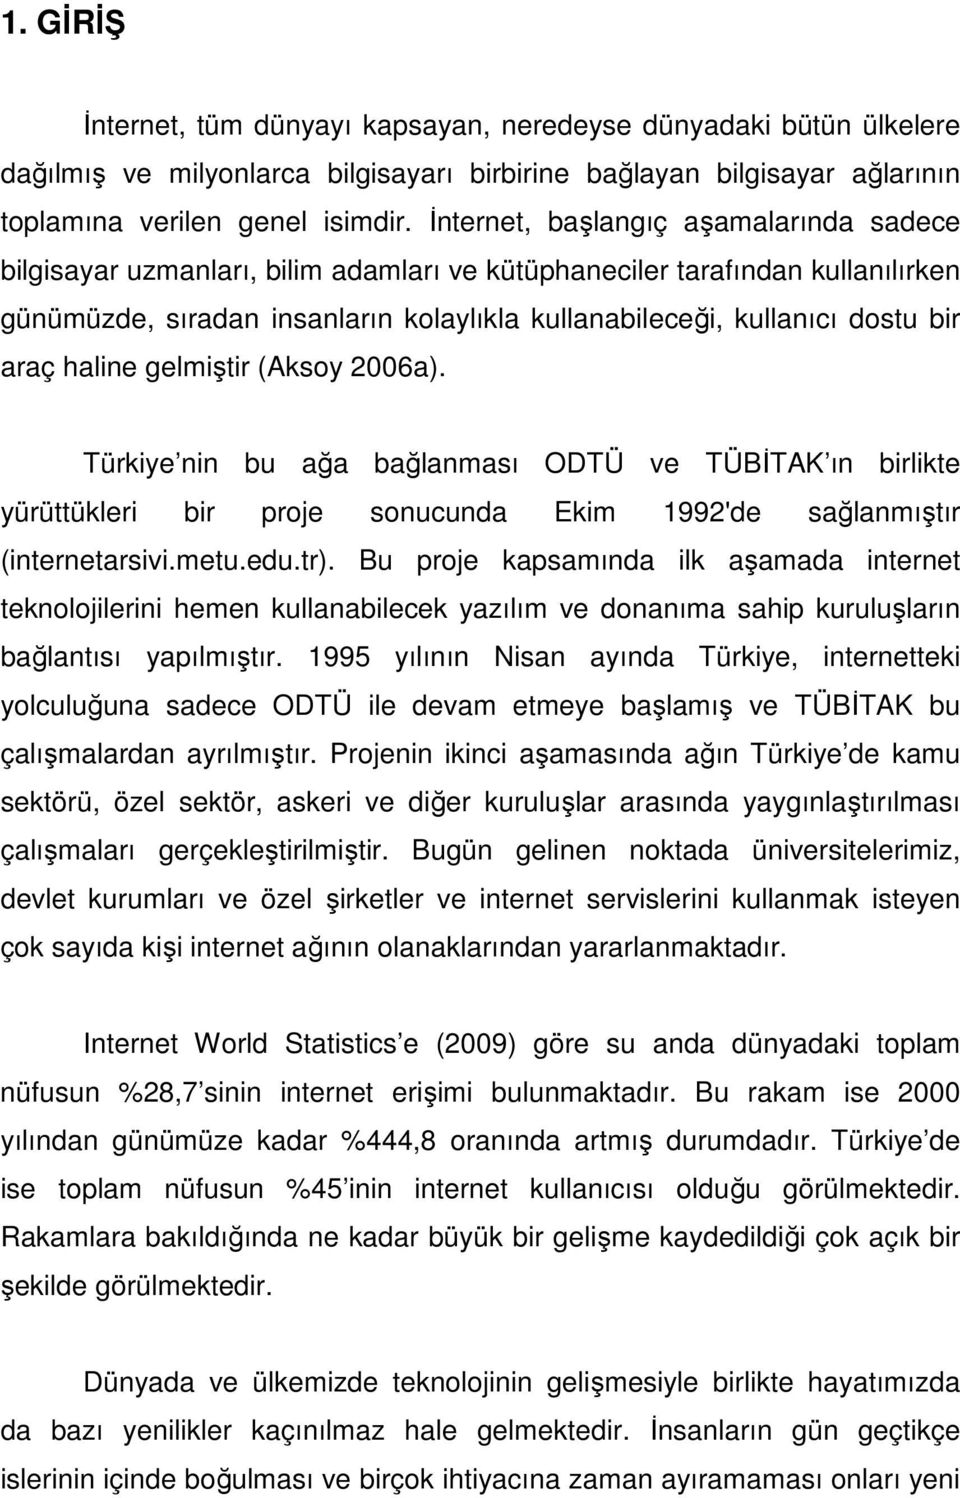 araç haline gelmiştir (Aksoy 2006a). Türkiye nin bu ağa bağlanması ODTÜ ve TÜBİTAK ın birlikte yürüttükleri bir proje sonucunda Ekim 1992'de sağlanmıştır (internetarsivi.metu.edu.tr).